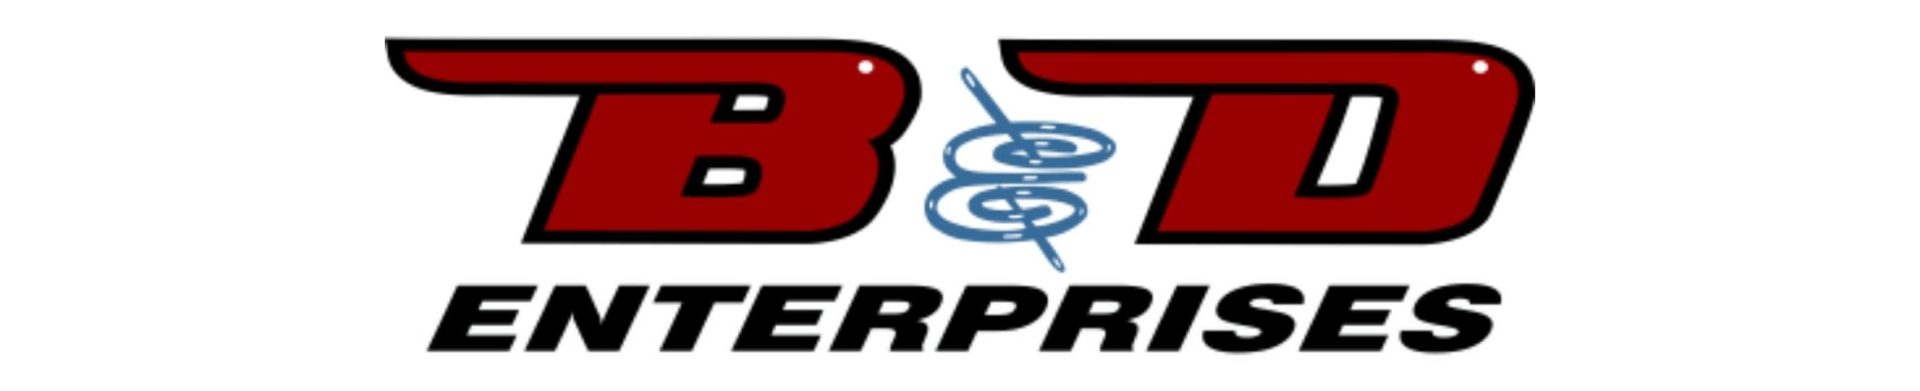 B&D Enterprises logo